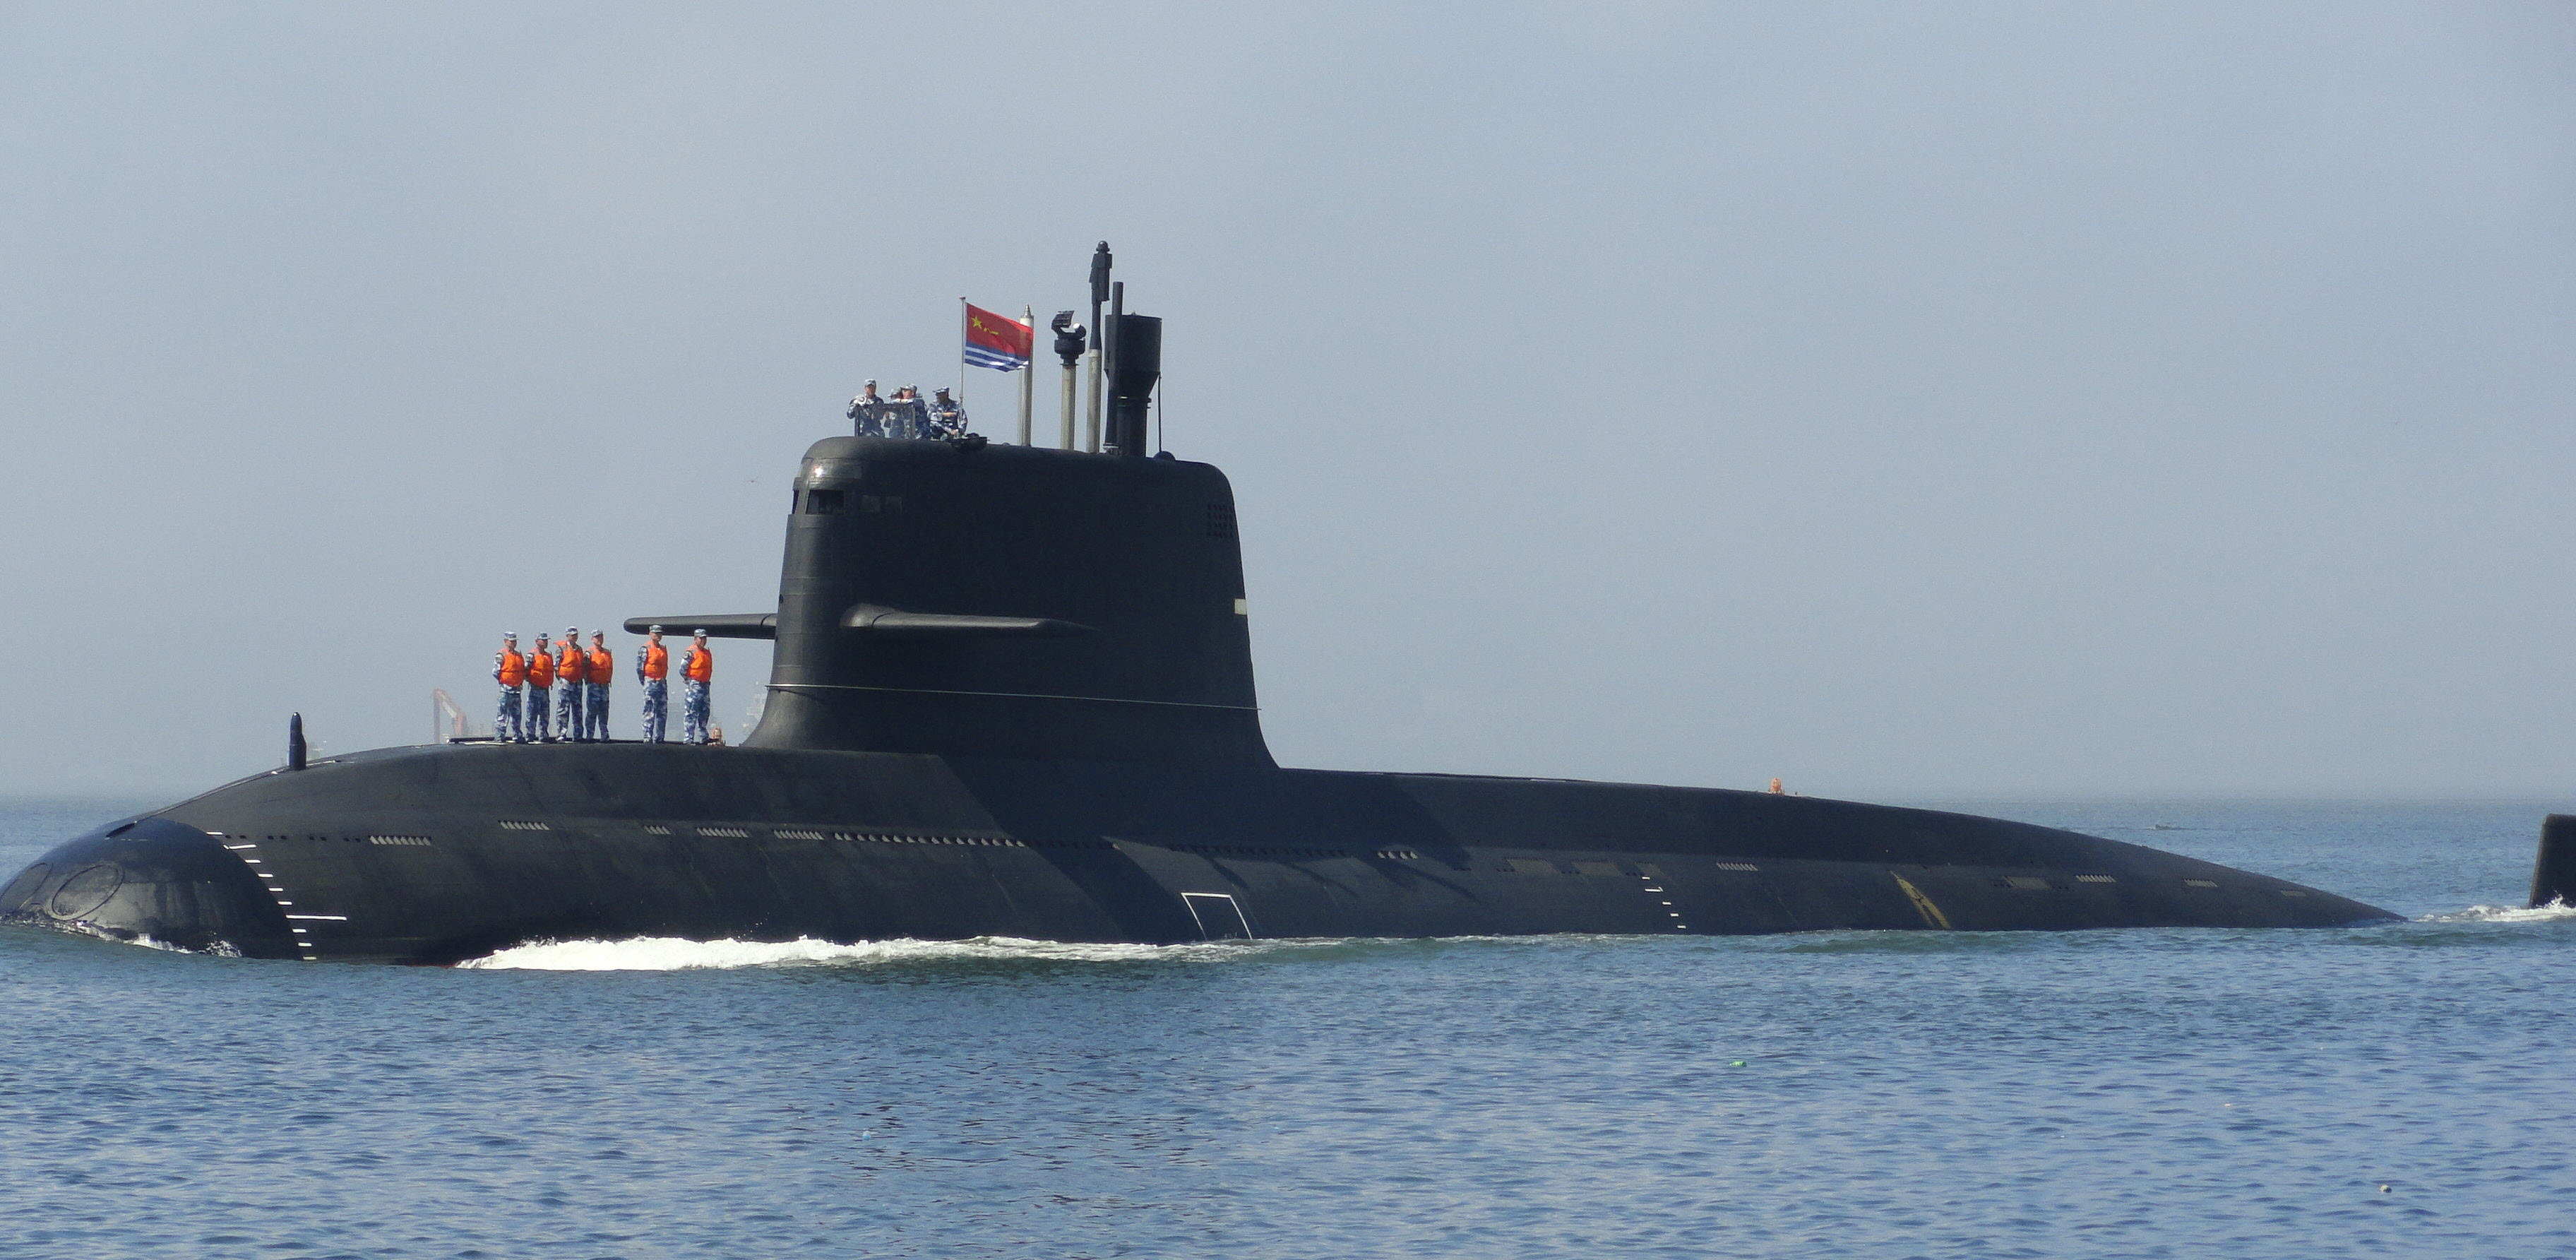 military-submarine